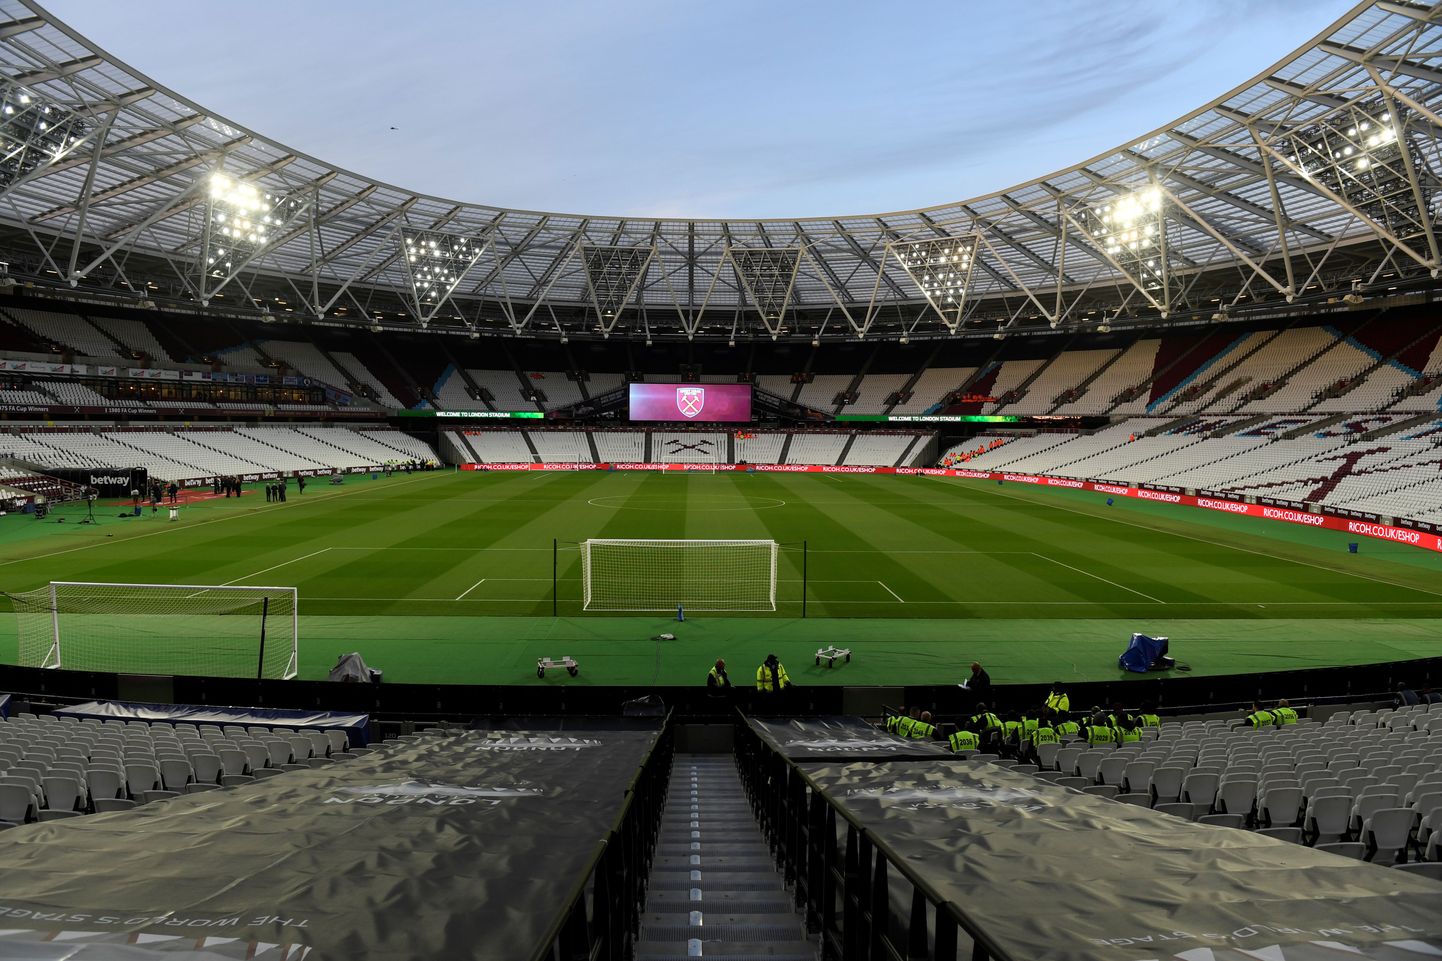 Londoni olümpiastaadion on nüüd koduks West Hami klubile.